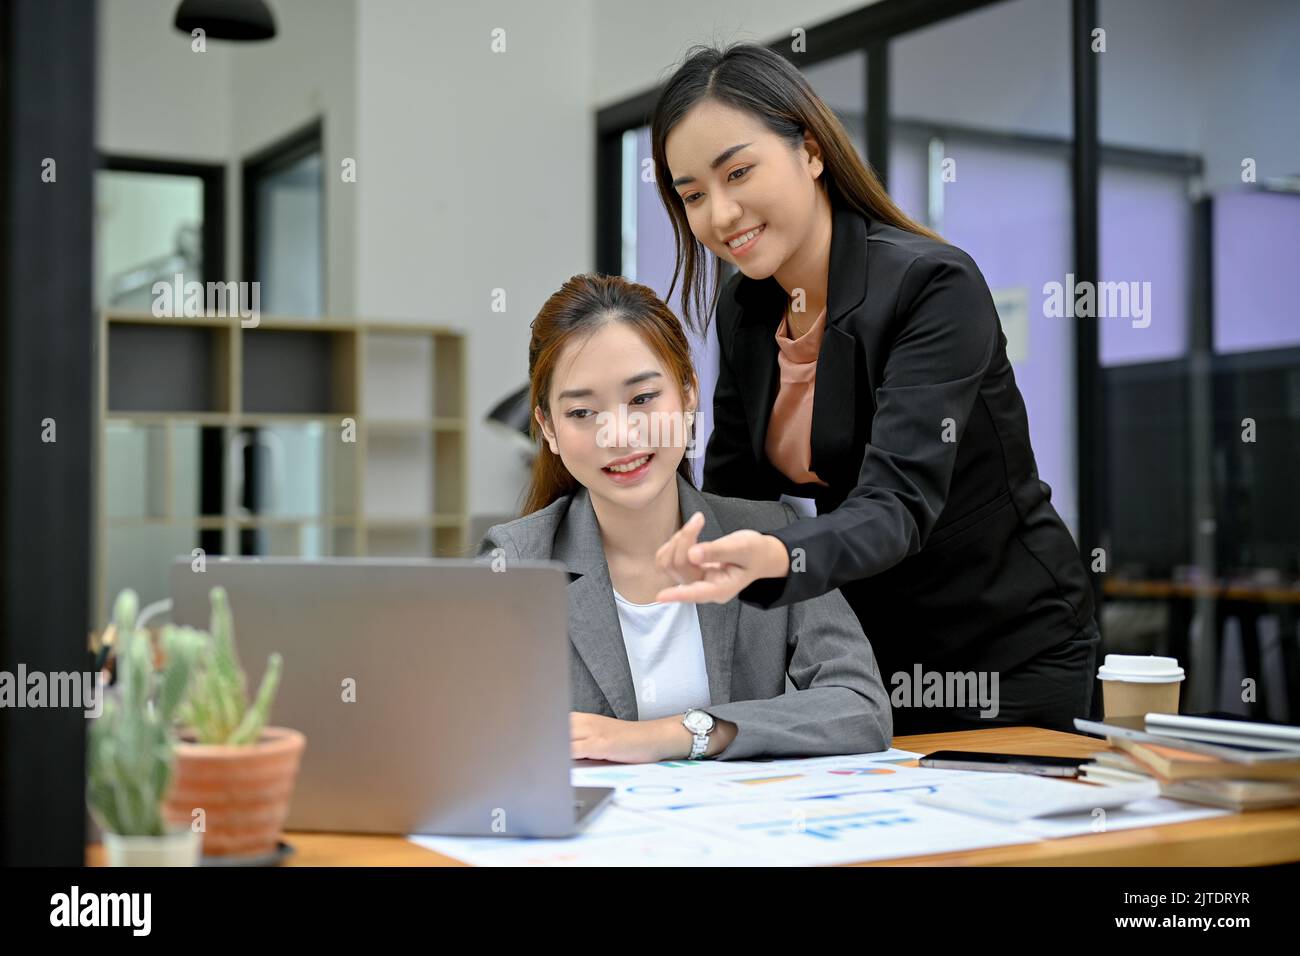 Professionelle und fröhliche asiatische Managerin, die die Arbeit ihrer jungen weiblichen Mitarbeiterin am Laptop coacht, trainiert und berät. Stockfoto